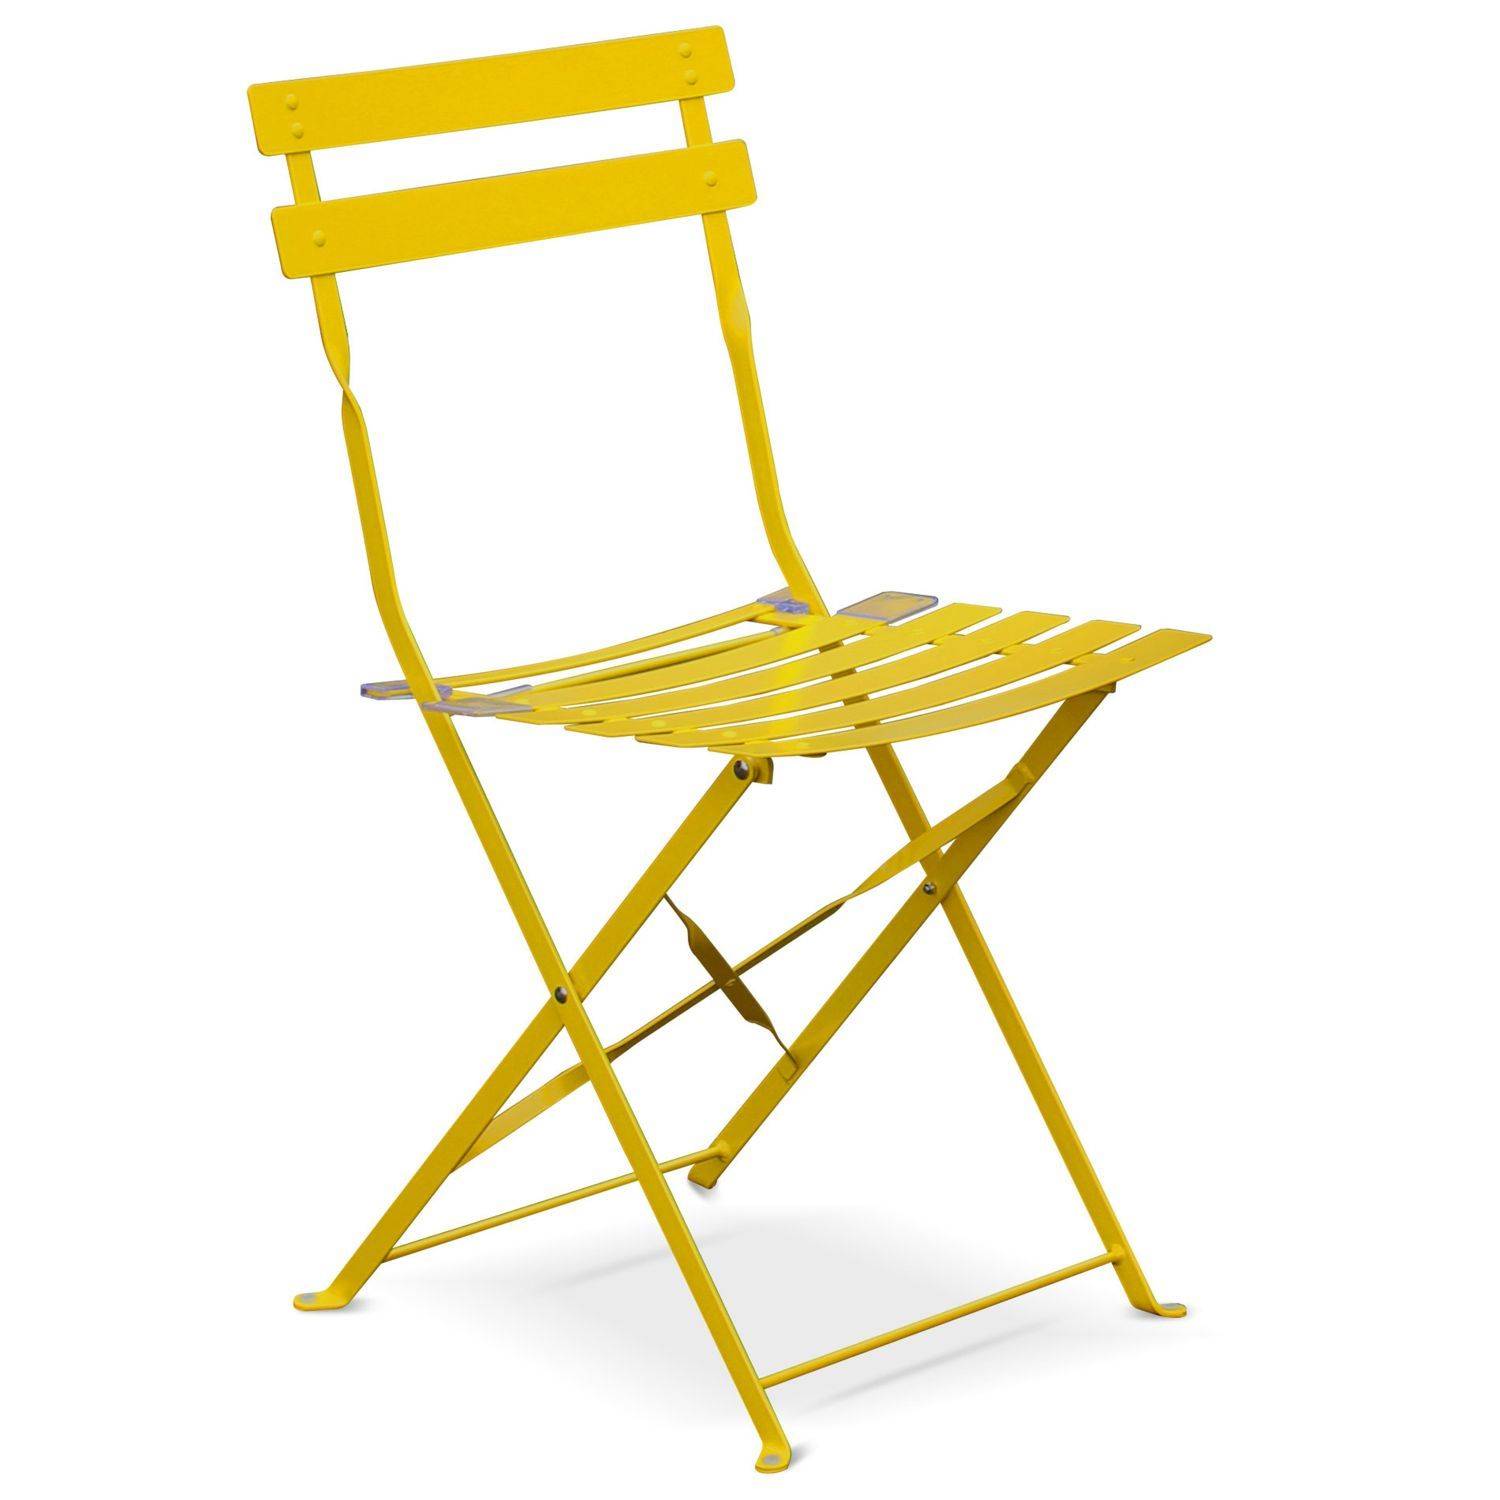 Klappbare Bistro-Gartenmöbel - Emilia quadratisch gelb - Tisch 70x70cm mit zwei Klappstühlen aus pulverbeschichtetem Stahl Photo4